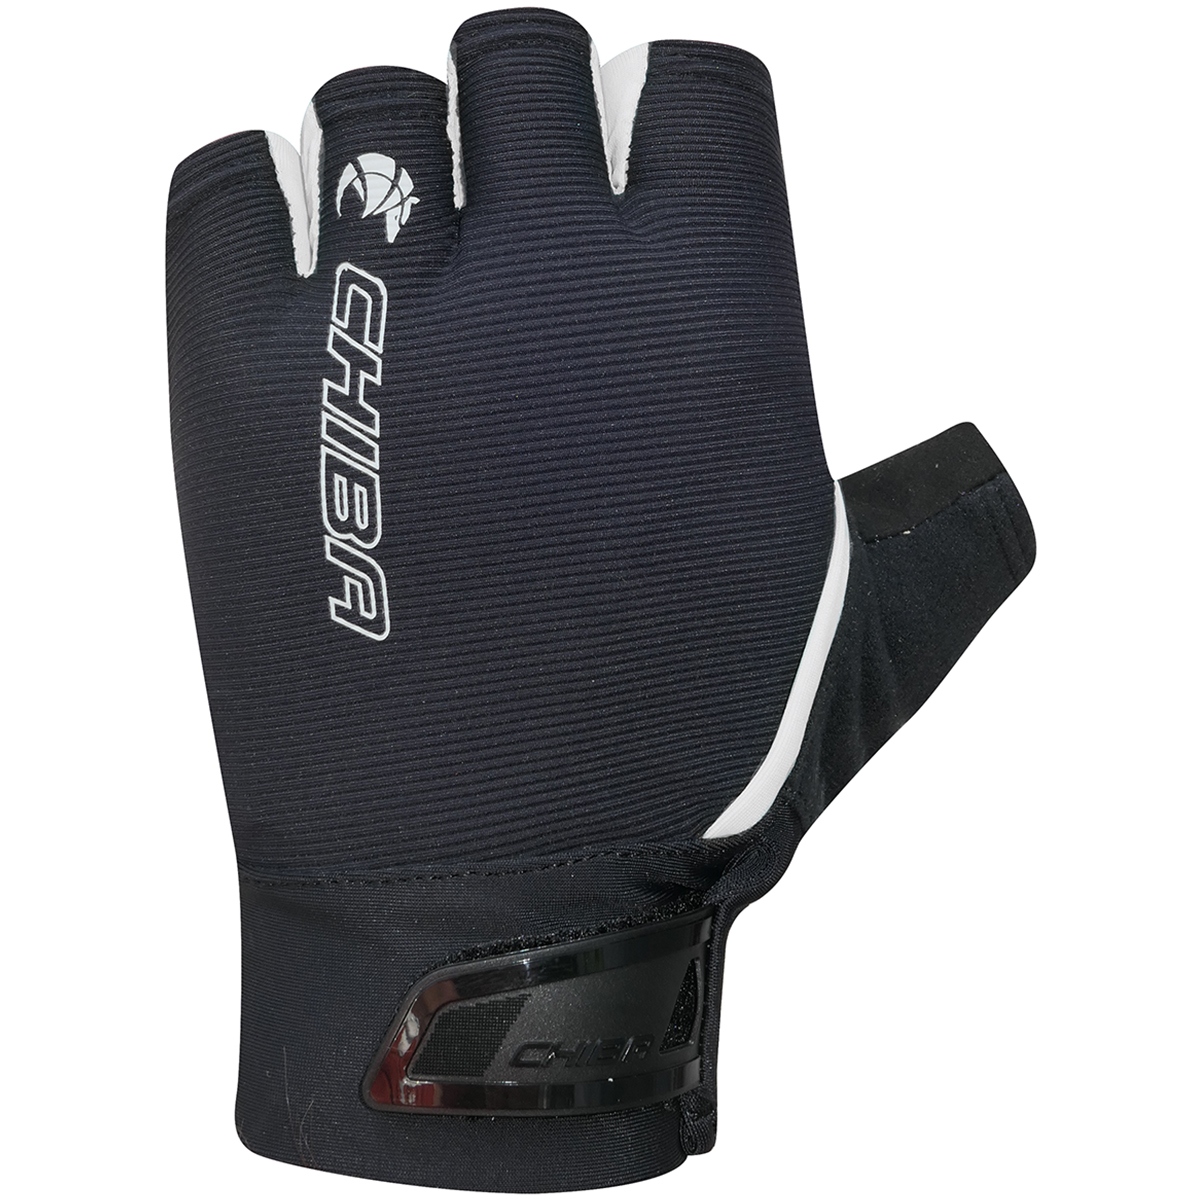 Produktbild von Chiba Superlight Kurzfinger-Handschuhe Damen - schwarz